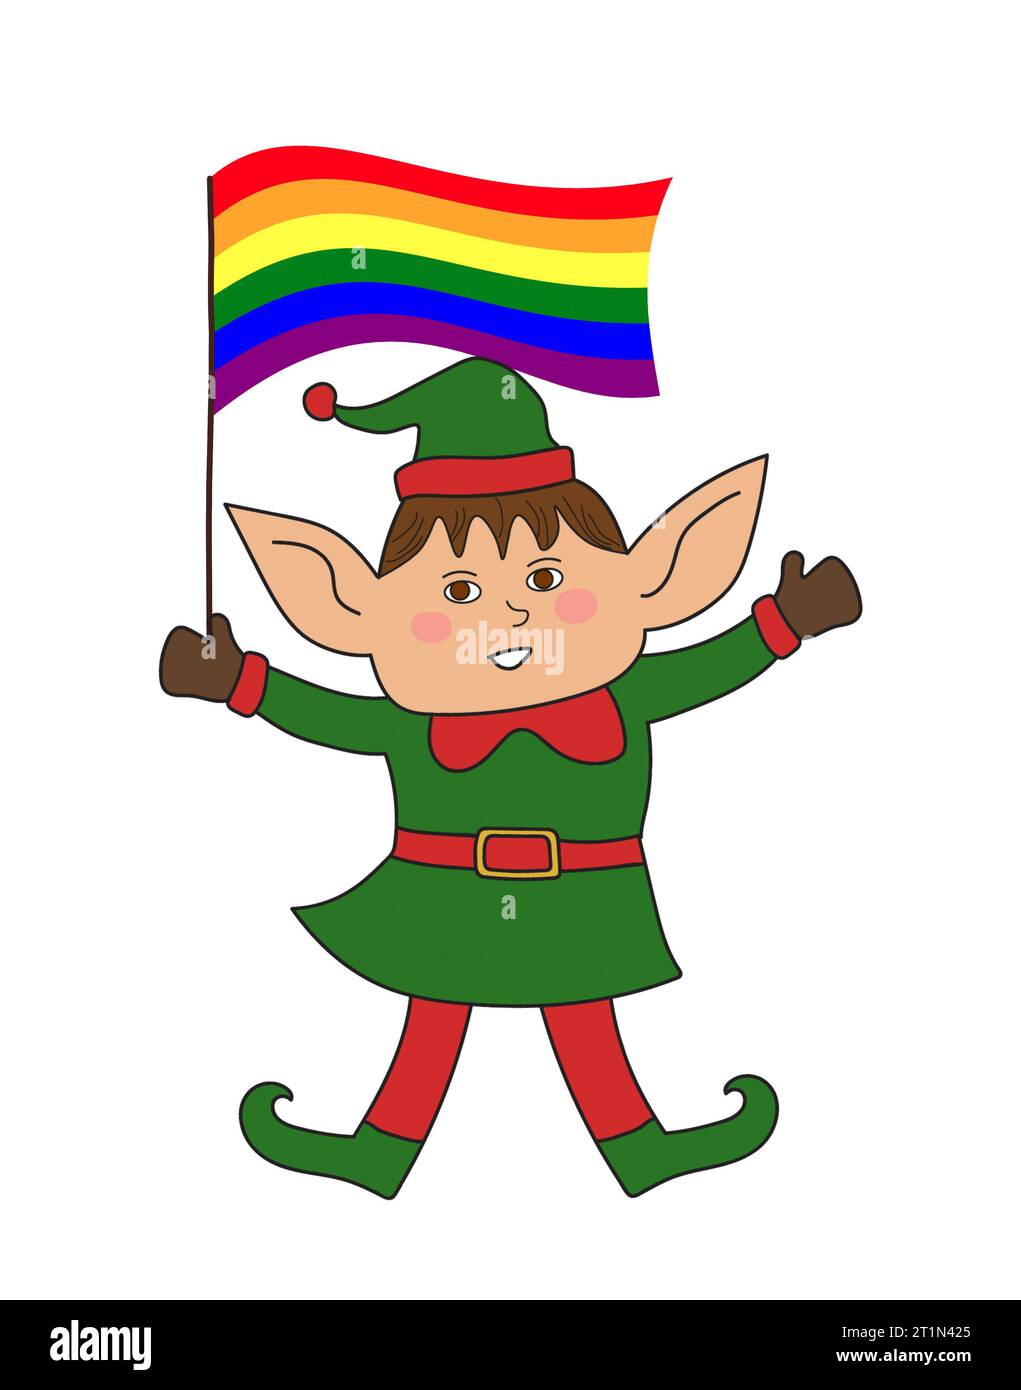 Mignon main d'elfe de Noël tenant le drapeau arc-en-ciel gay fierté. Dessin de dessin animé clipart, isolé sur fond blanc. Banque D'Images